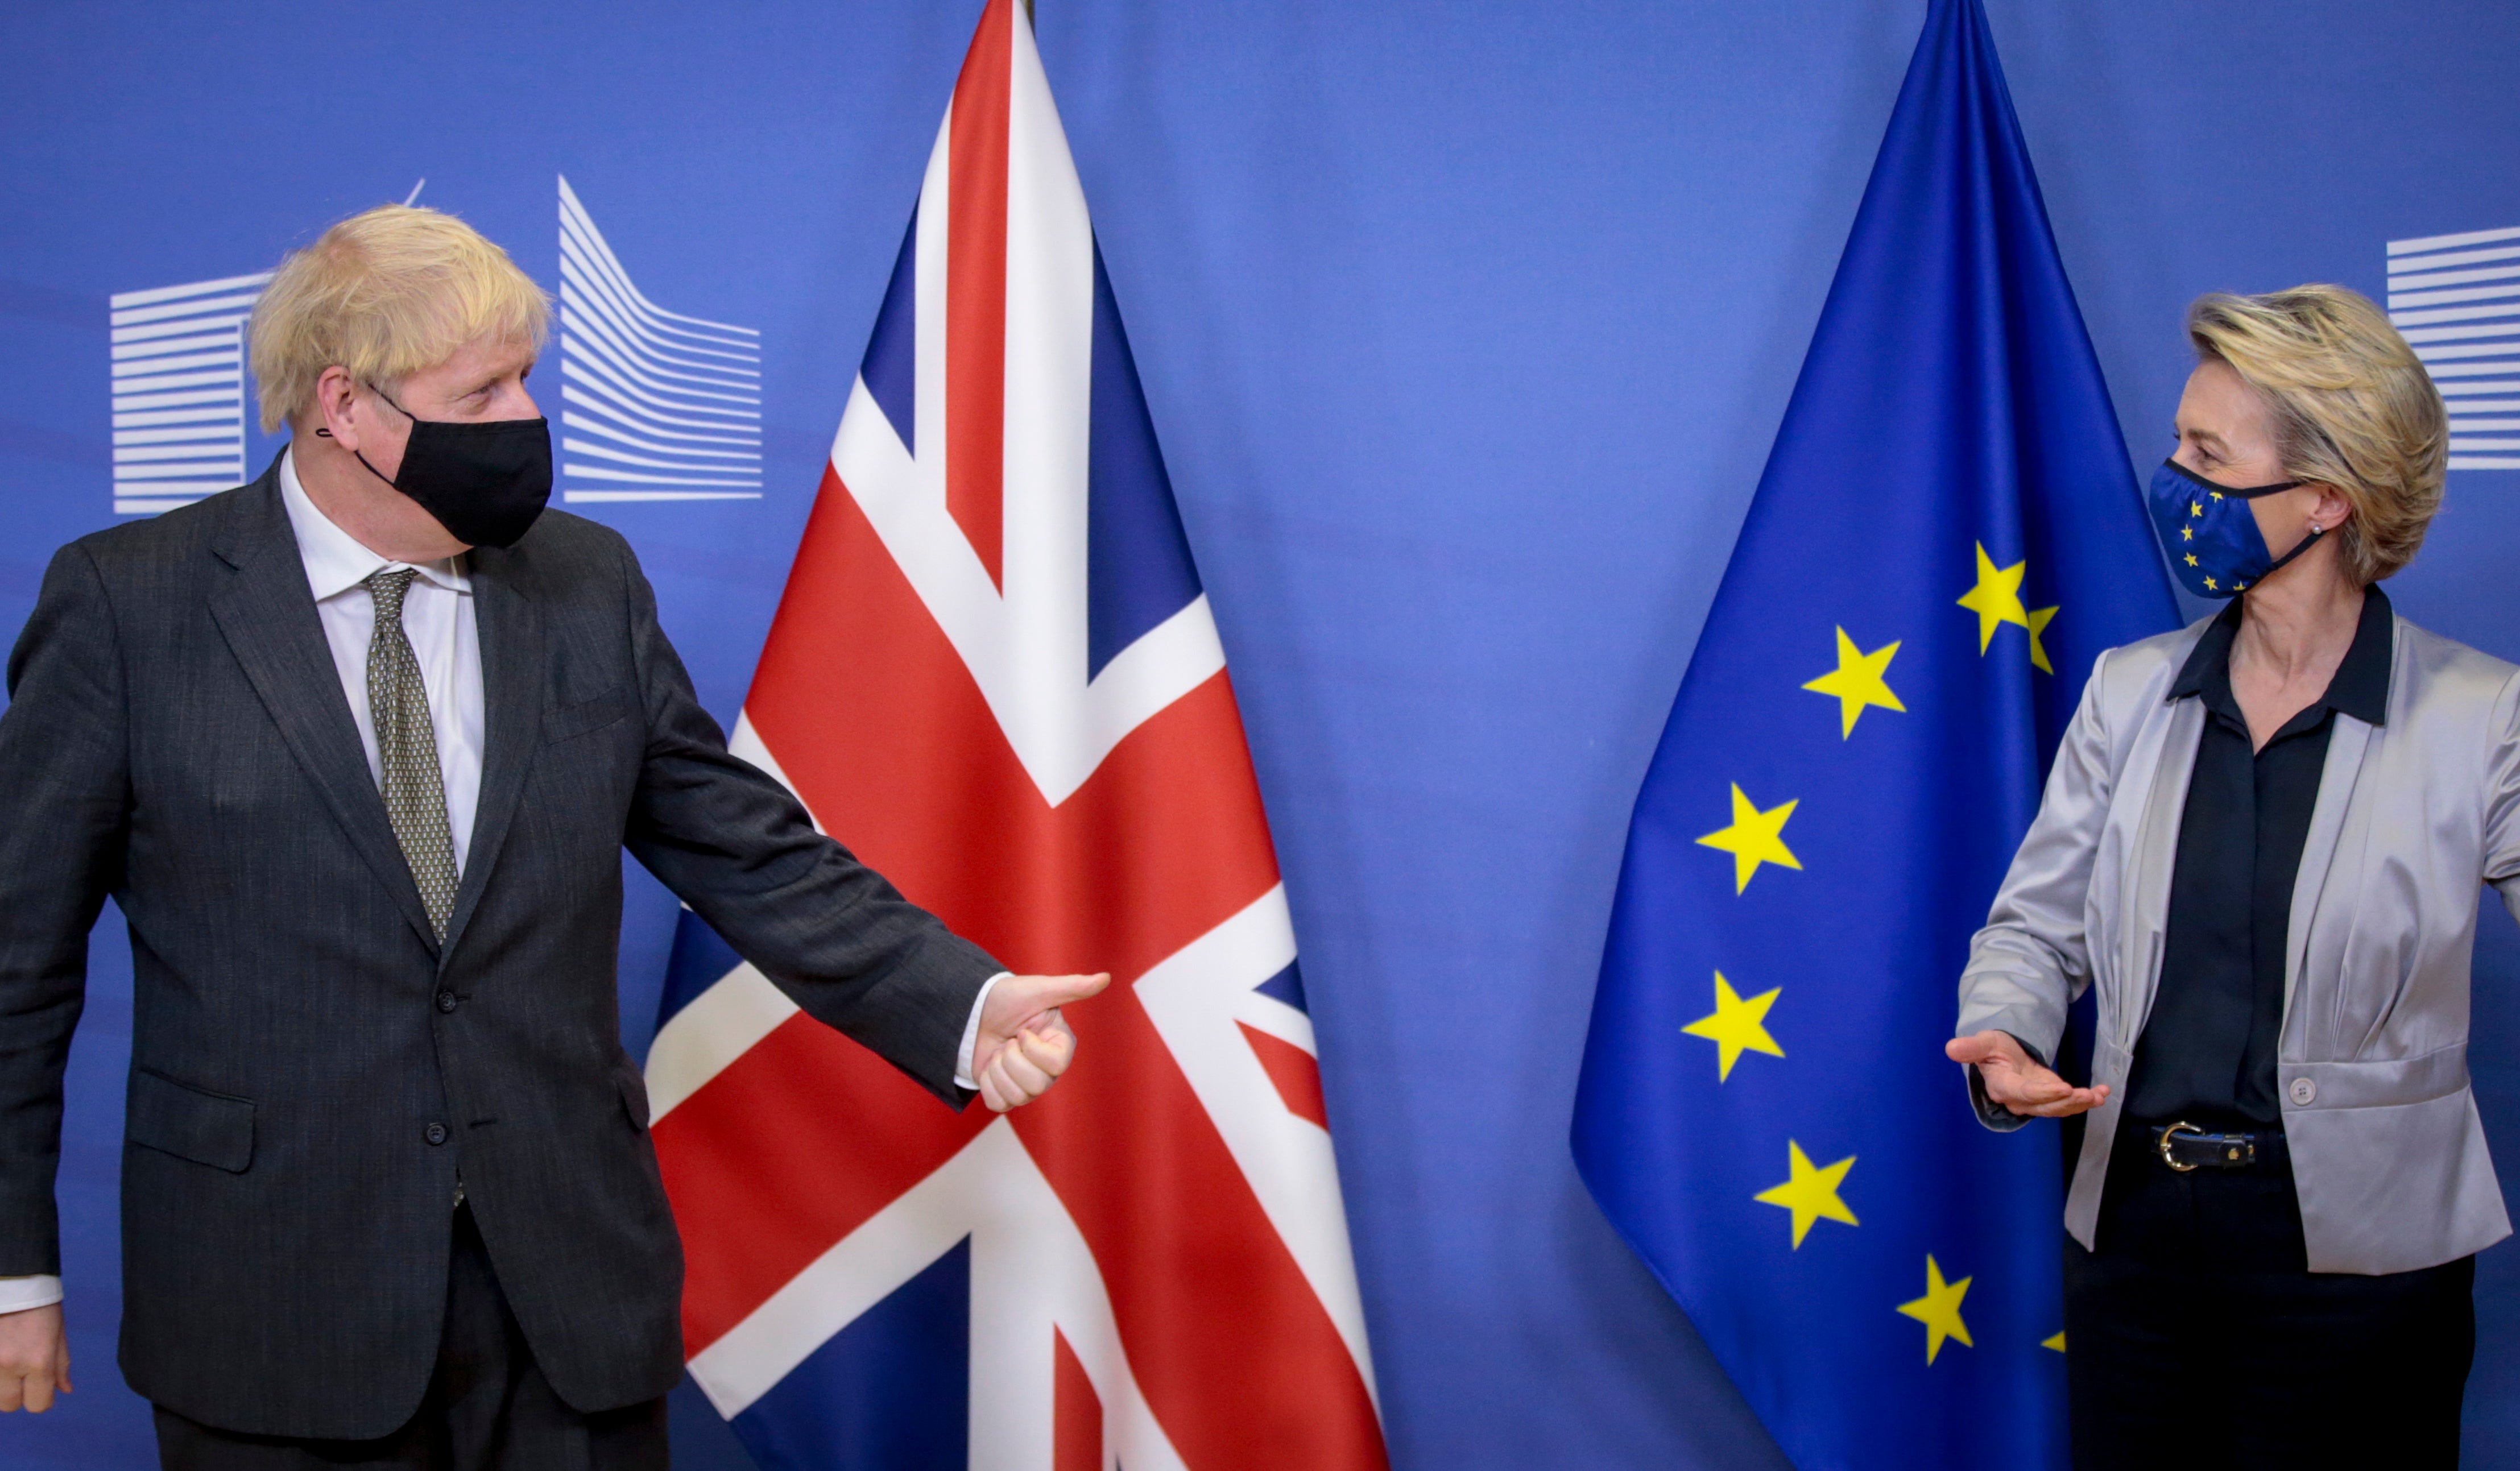 Boris Johnson meets European Commission president Ursula von der Leyen for Brexit talks in Brussels